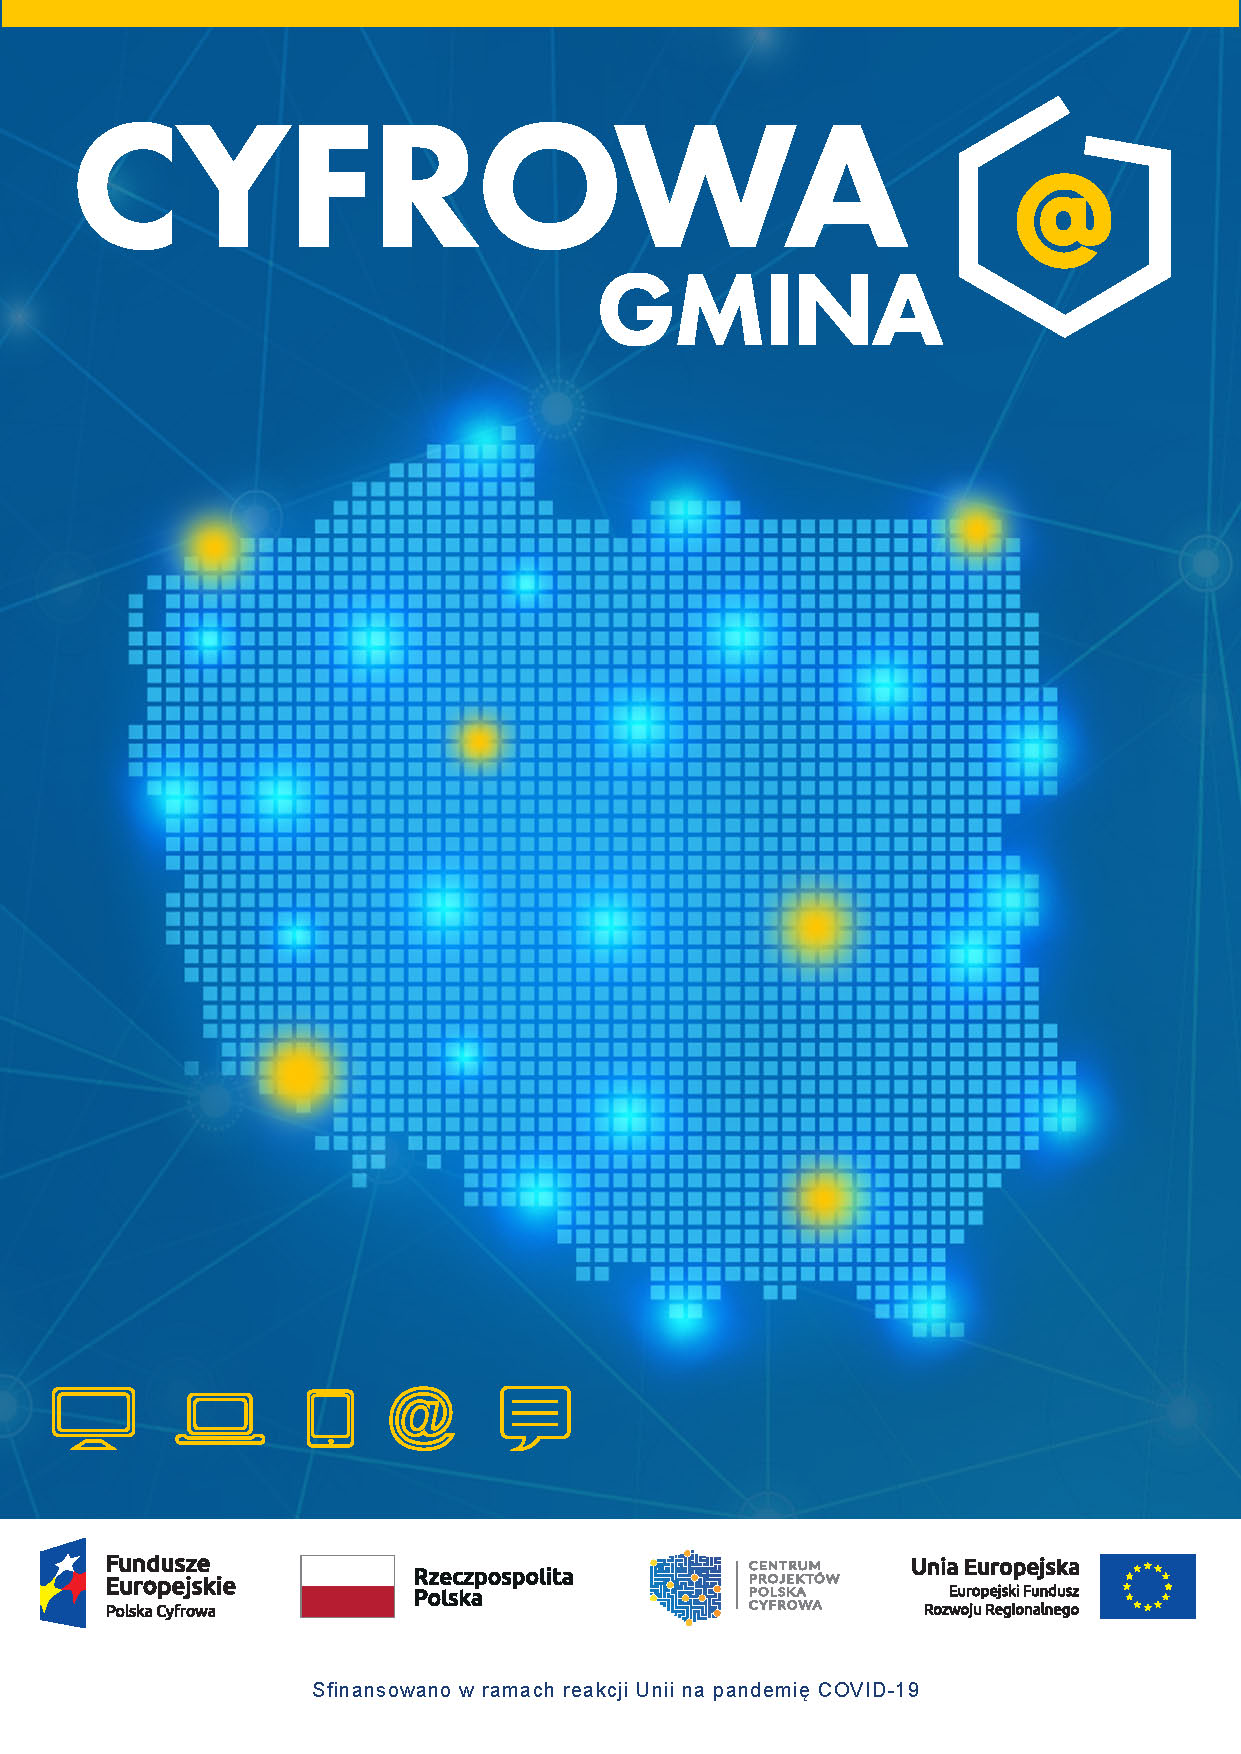 Plakat cyfrowa gmina żółty napis granatowe tło na środku kontur mapy Polski wypełniony niebieskimi kwadratami, i pomarańczowymi w miejscach występowania większych miast